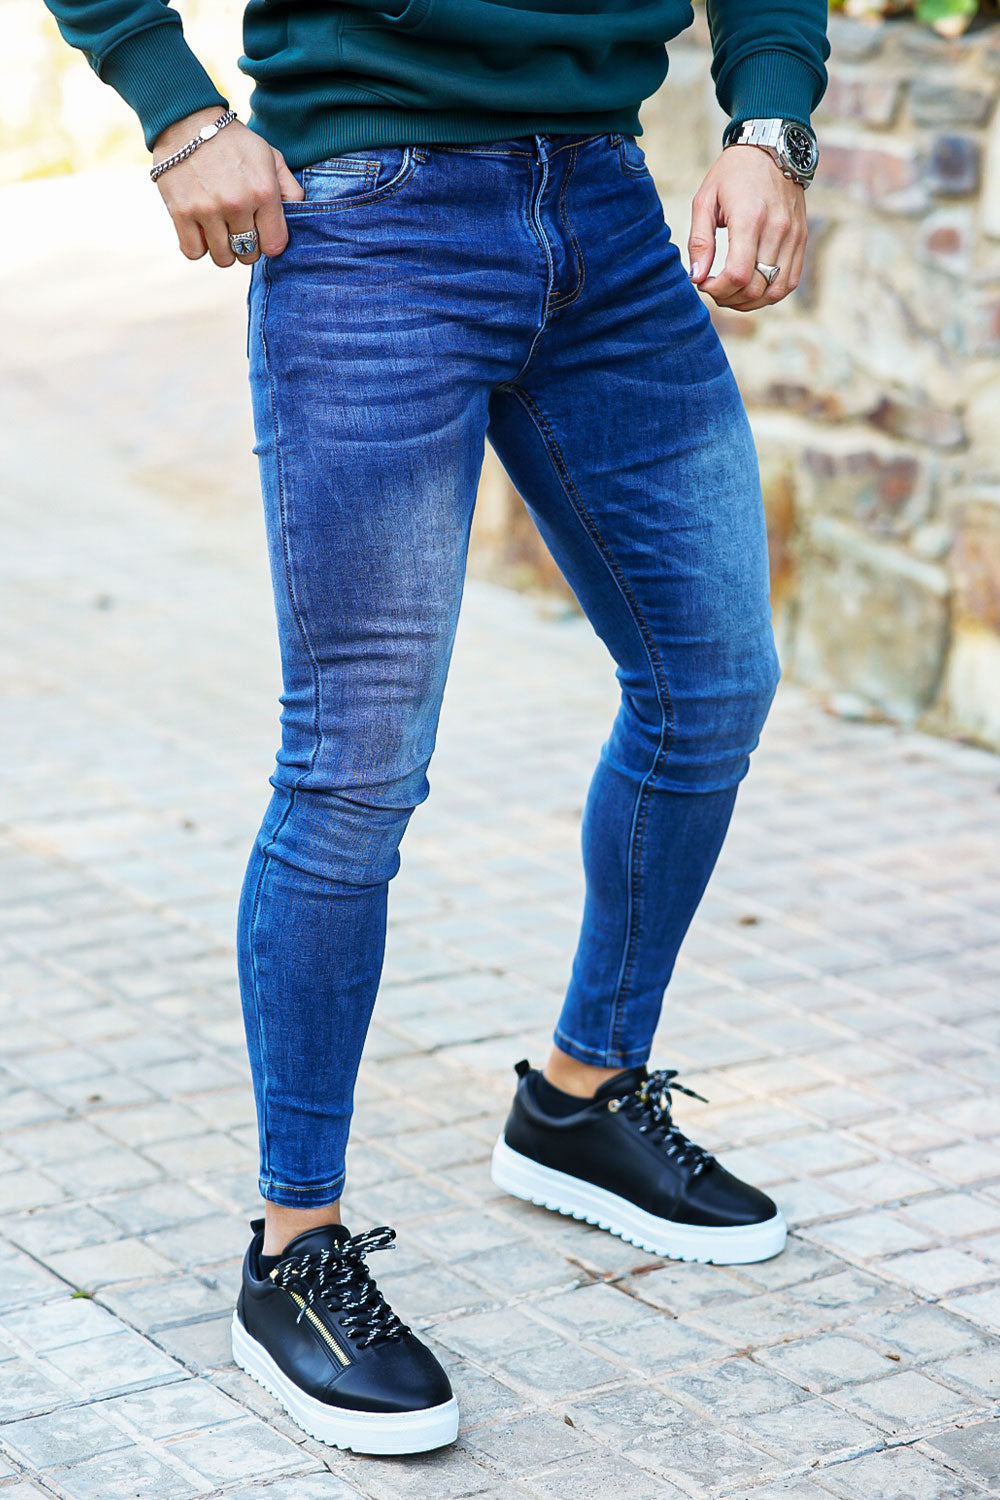 men's super skinny blue jeans